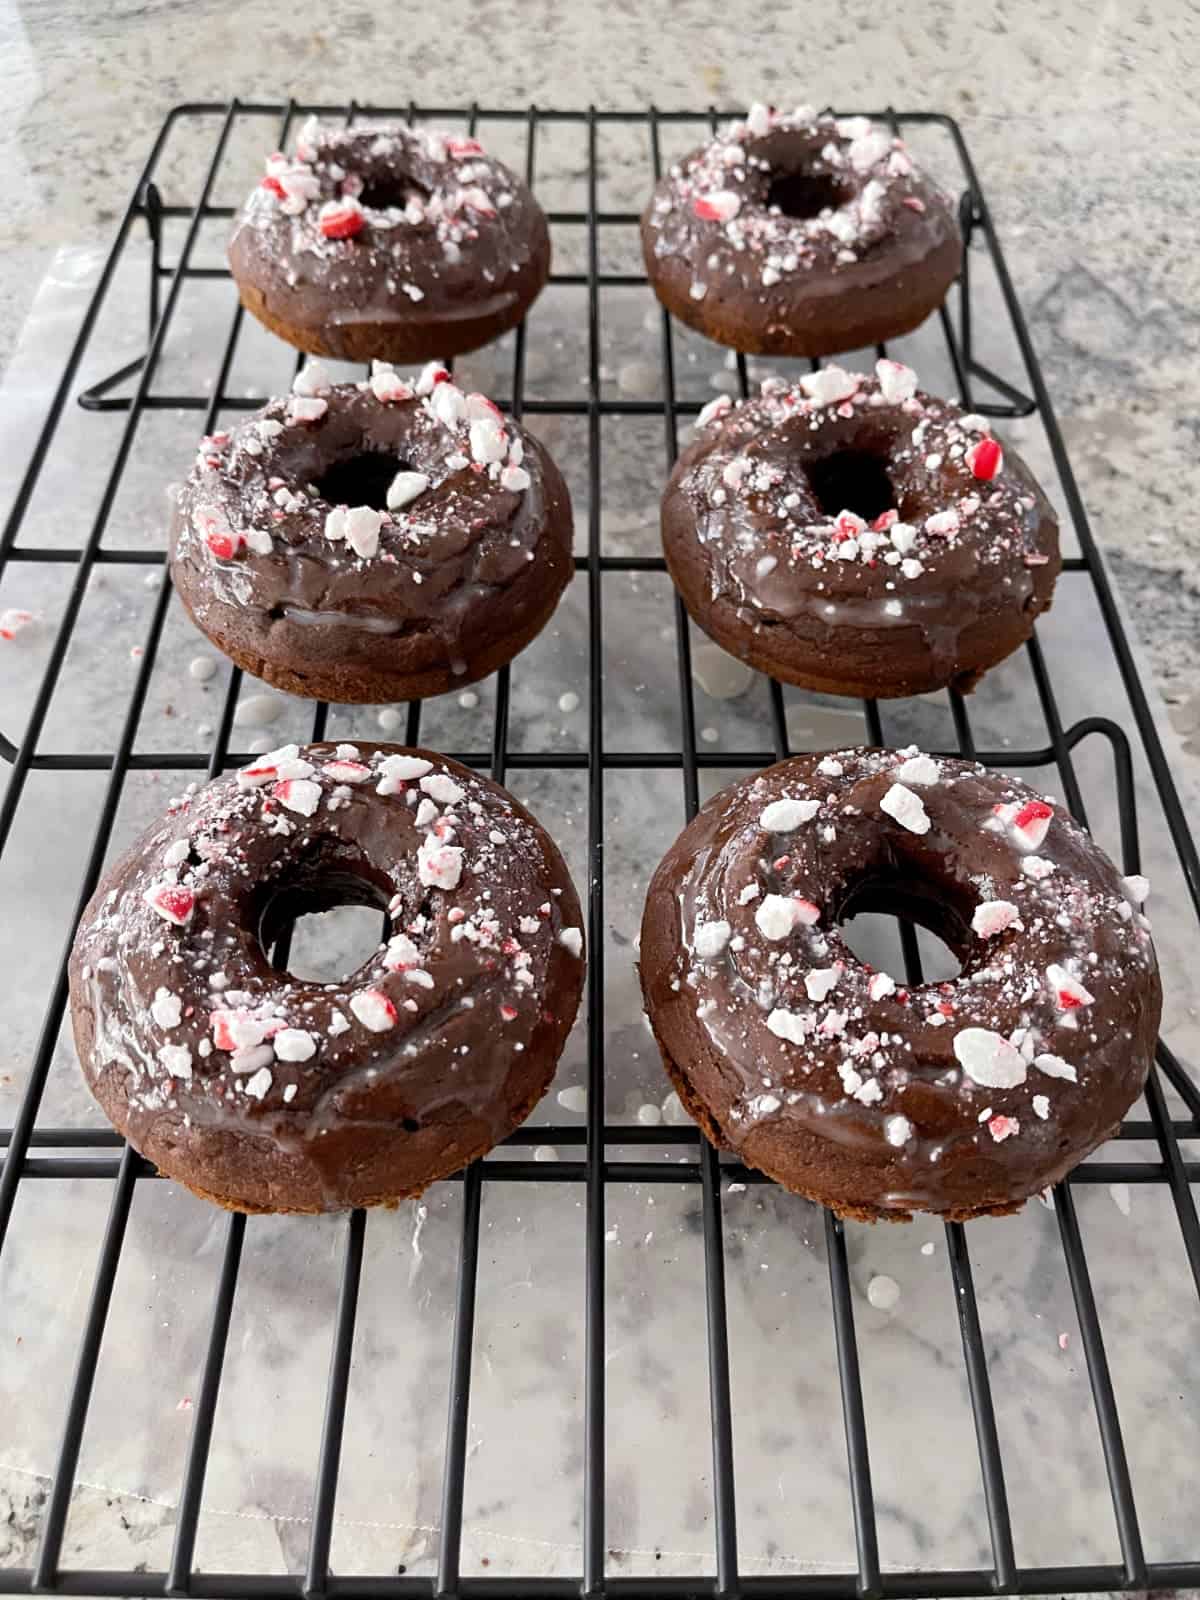 Mint chocolate glazed donuts on wire rack